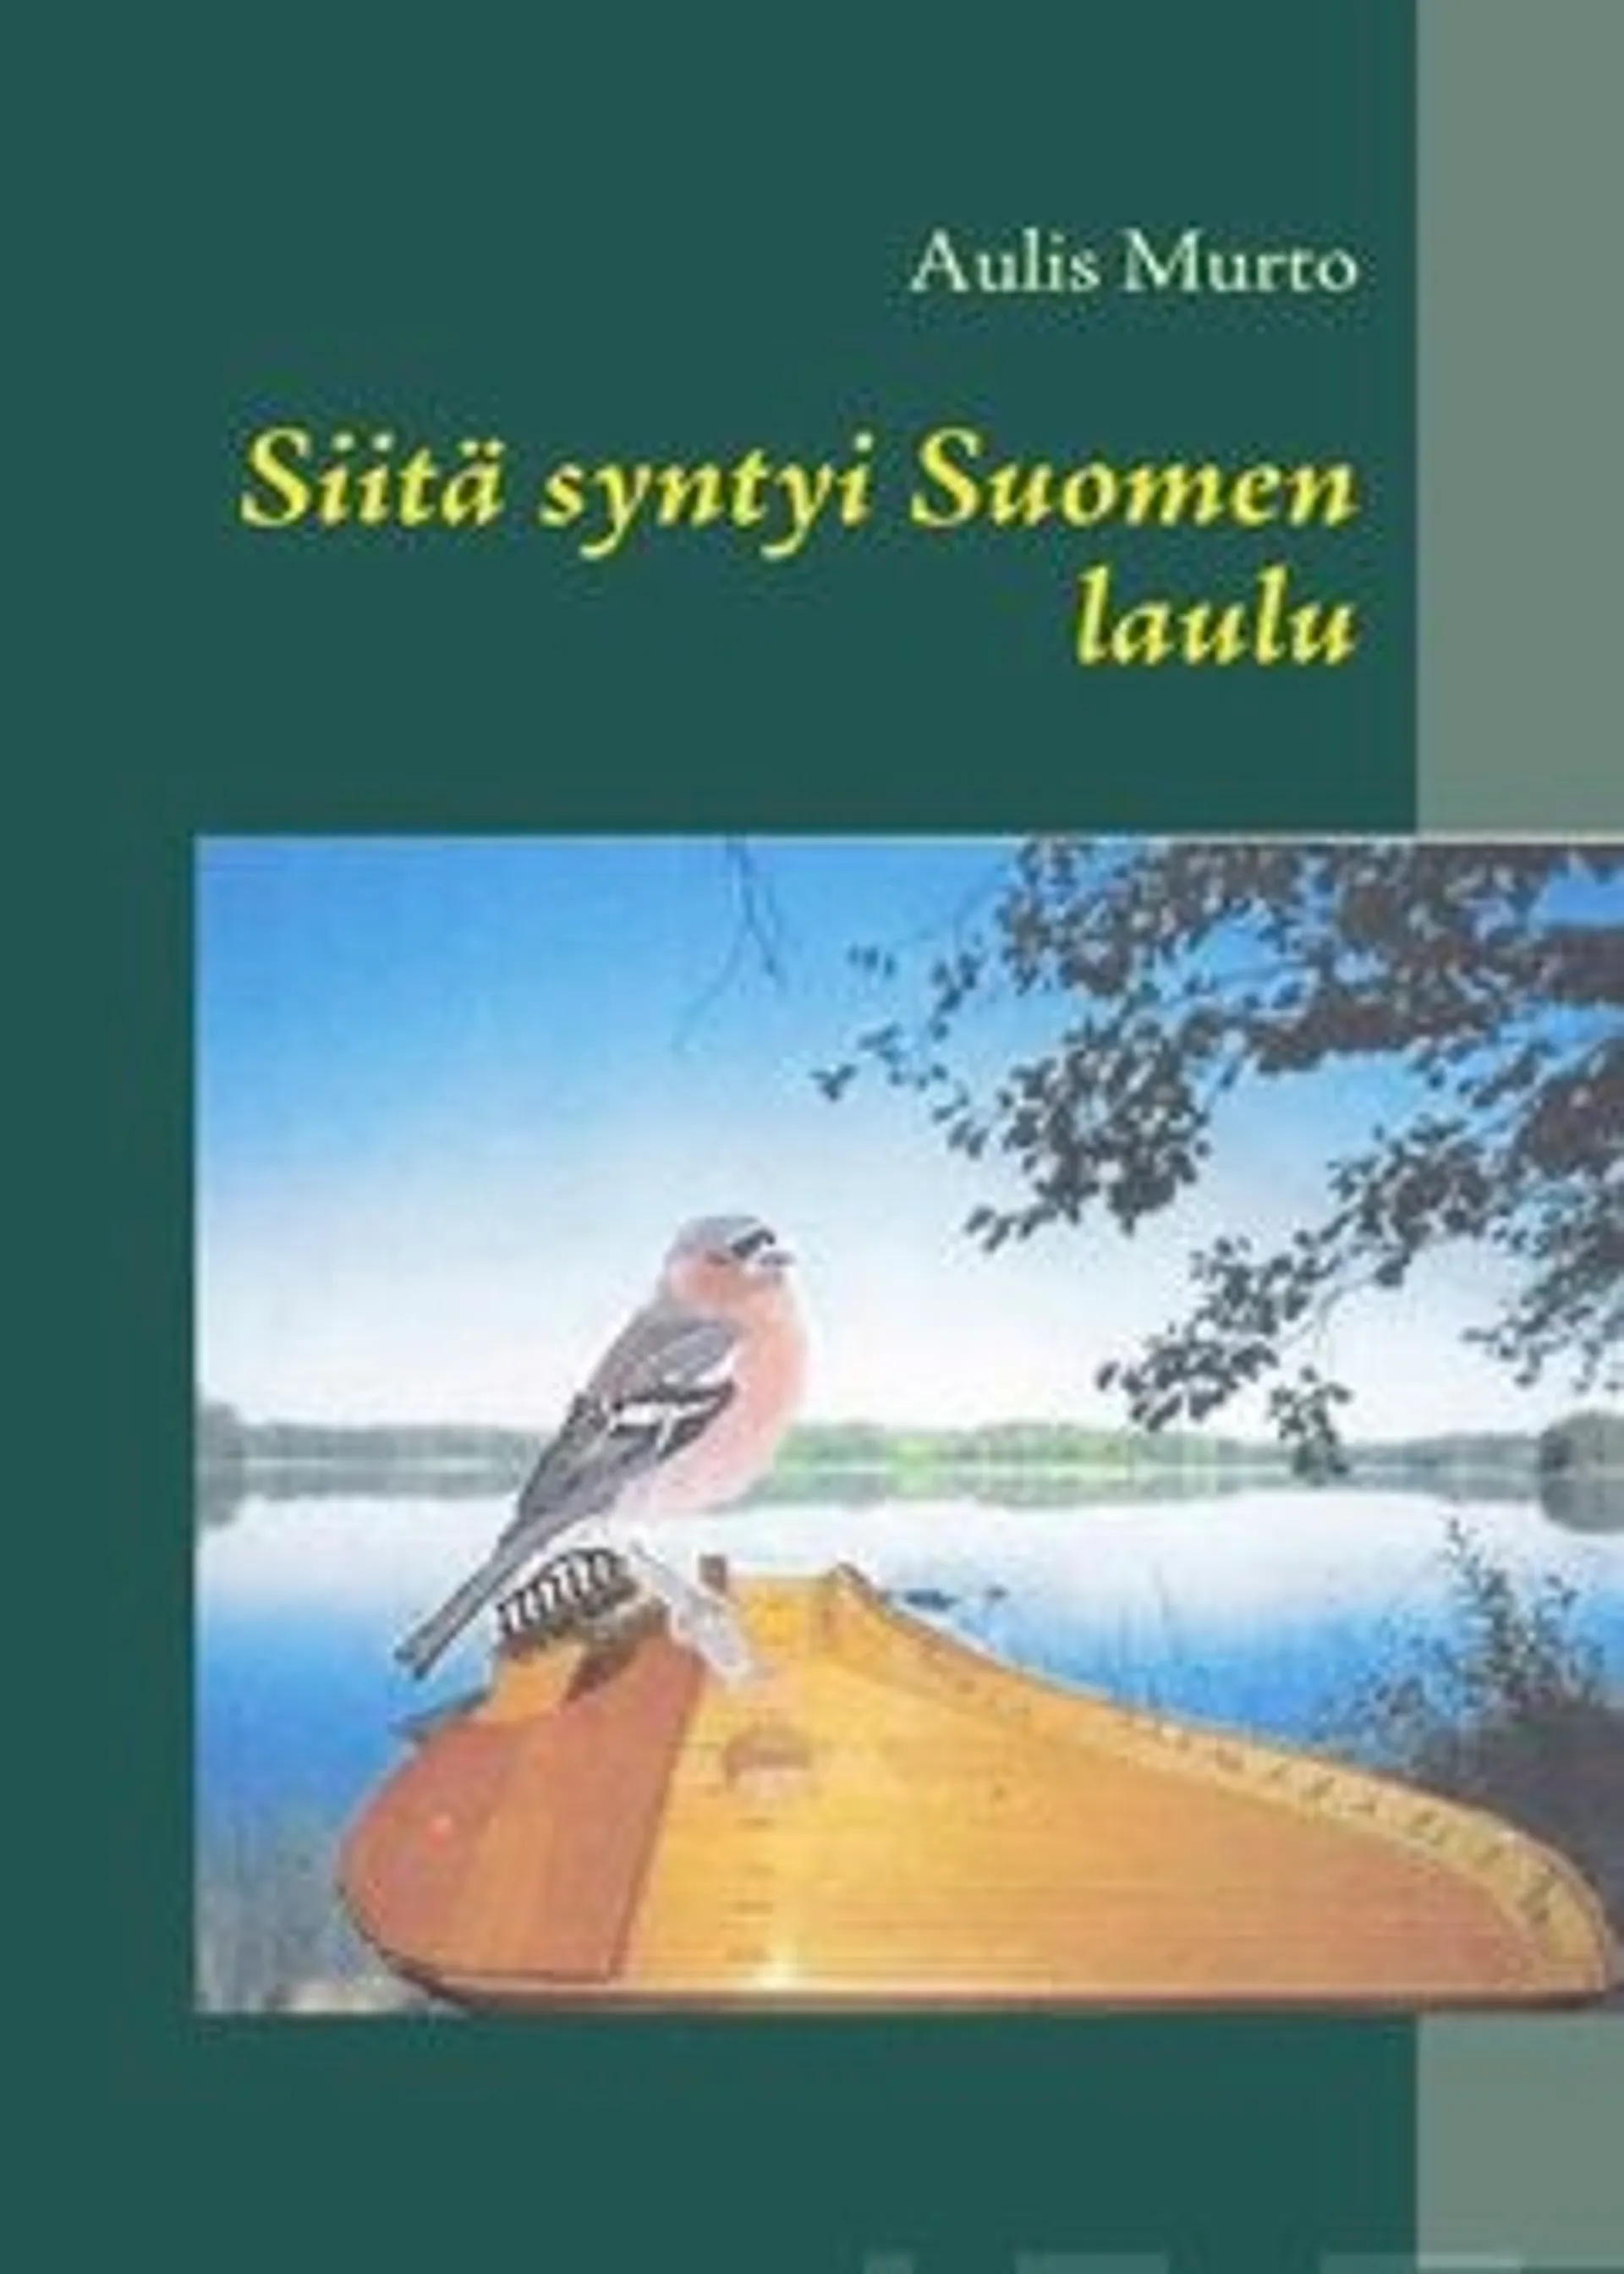 Murto, Siitä syntyi Suomen laulu